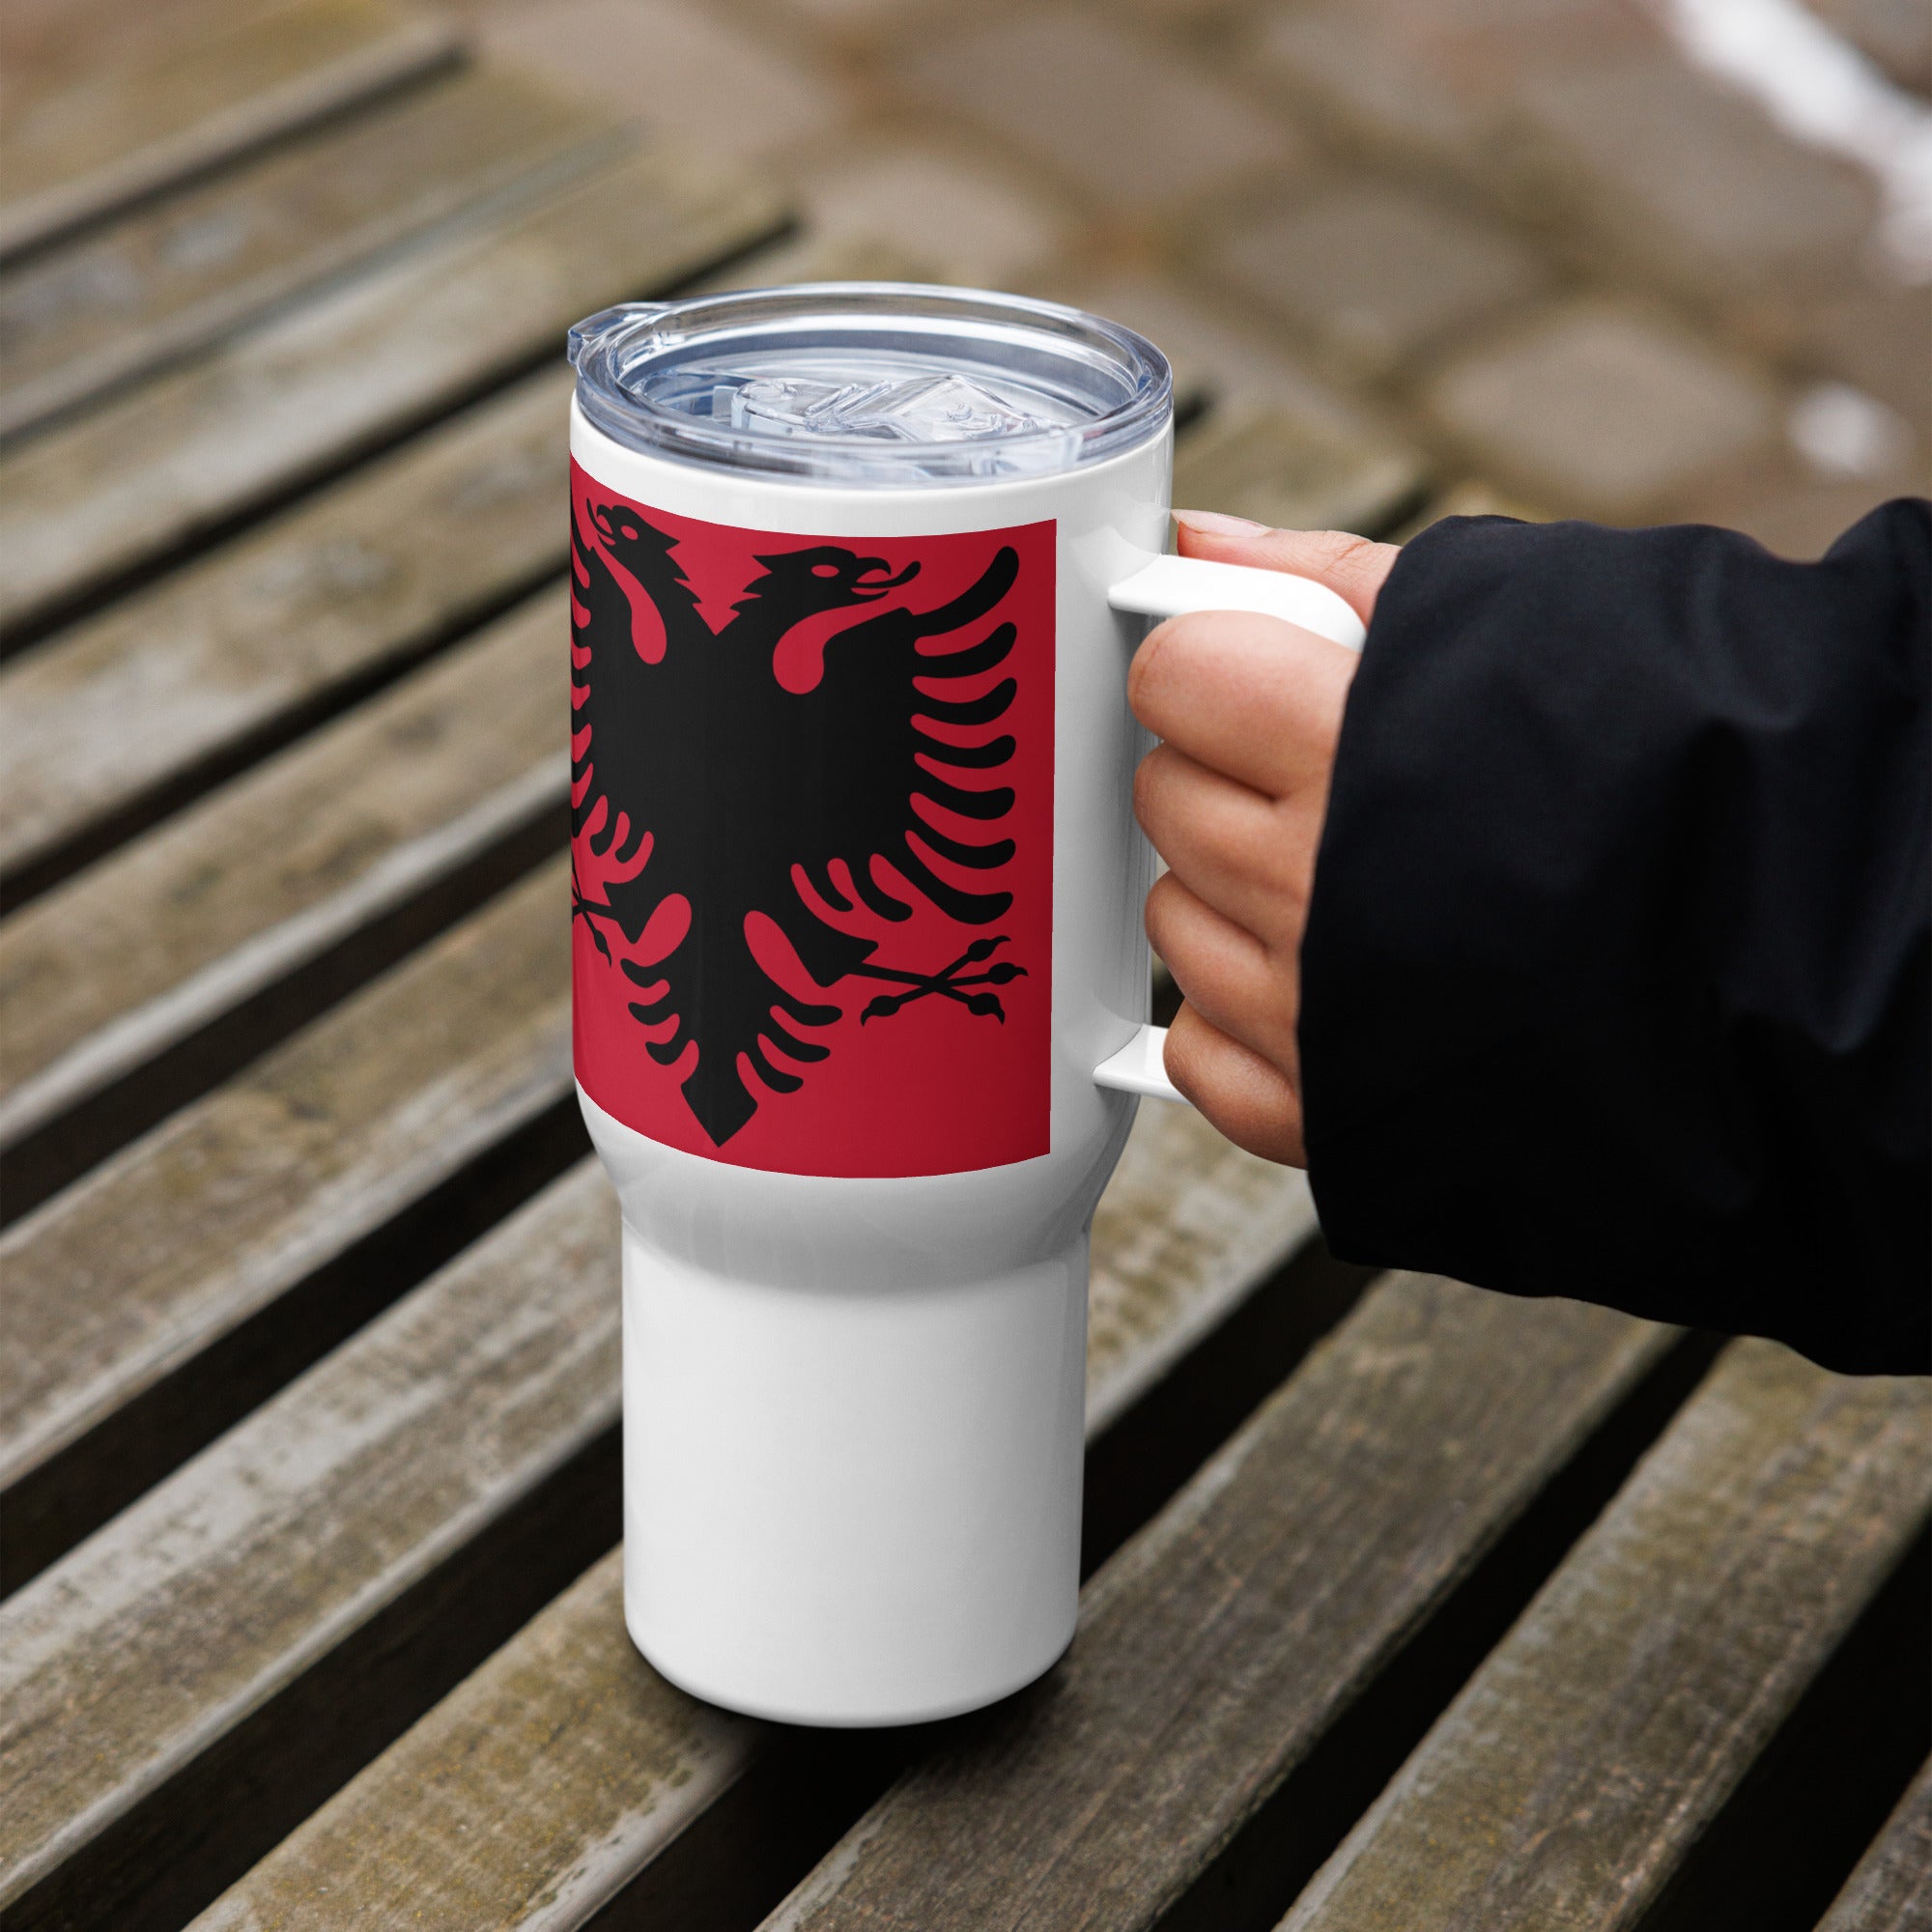 Travel mug with a handle Albanian flag